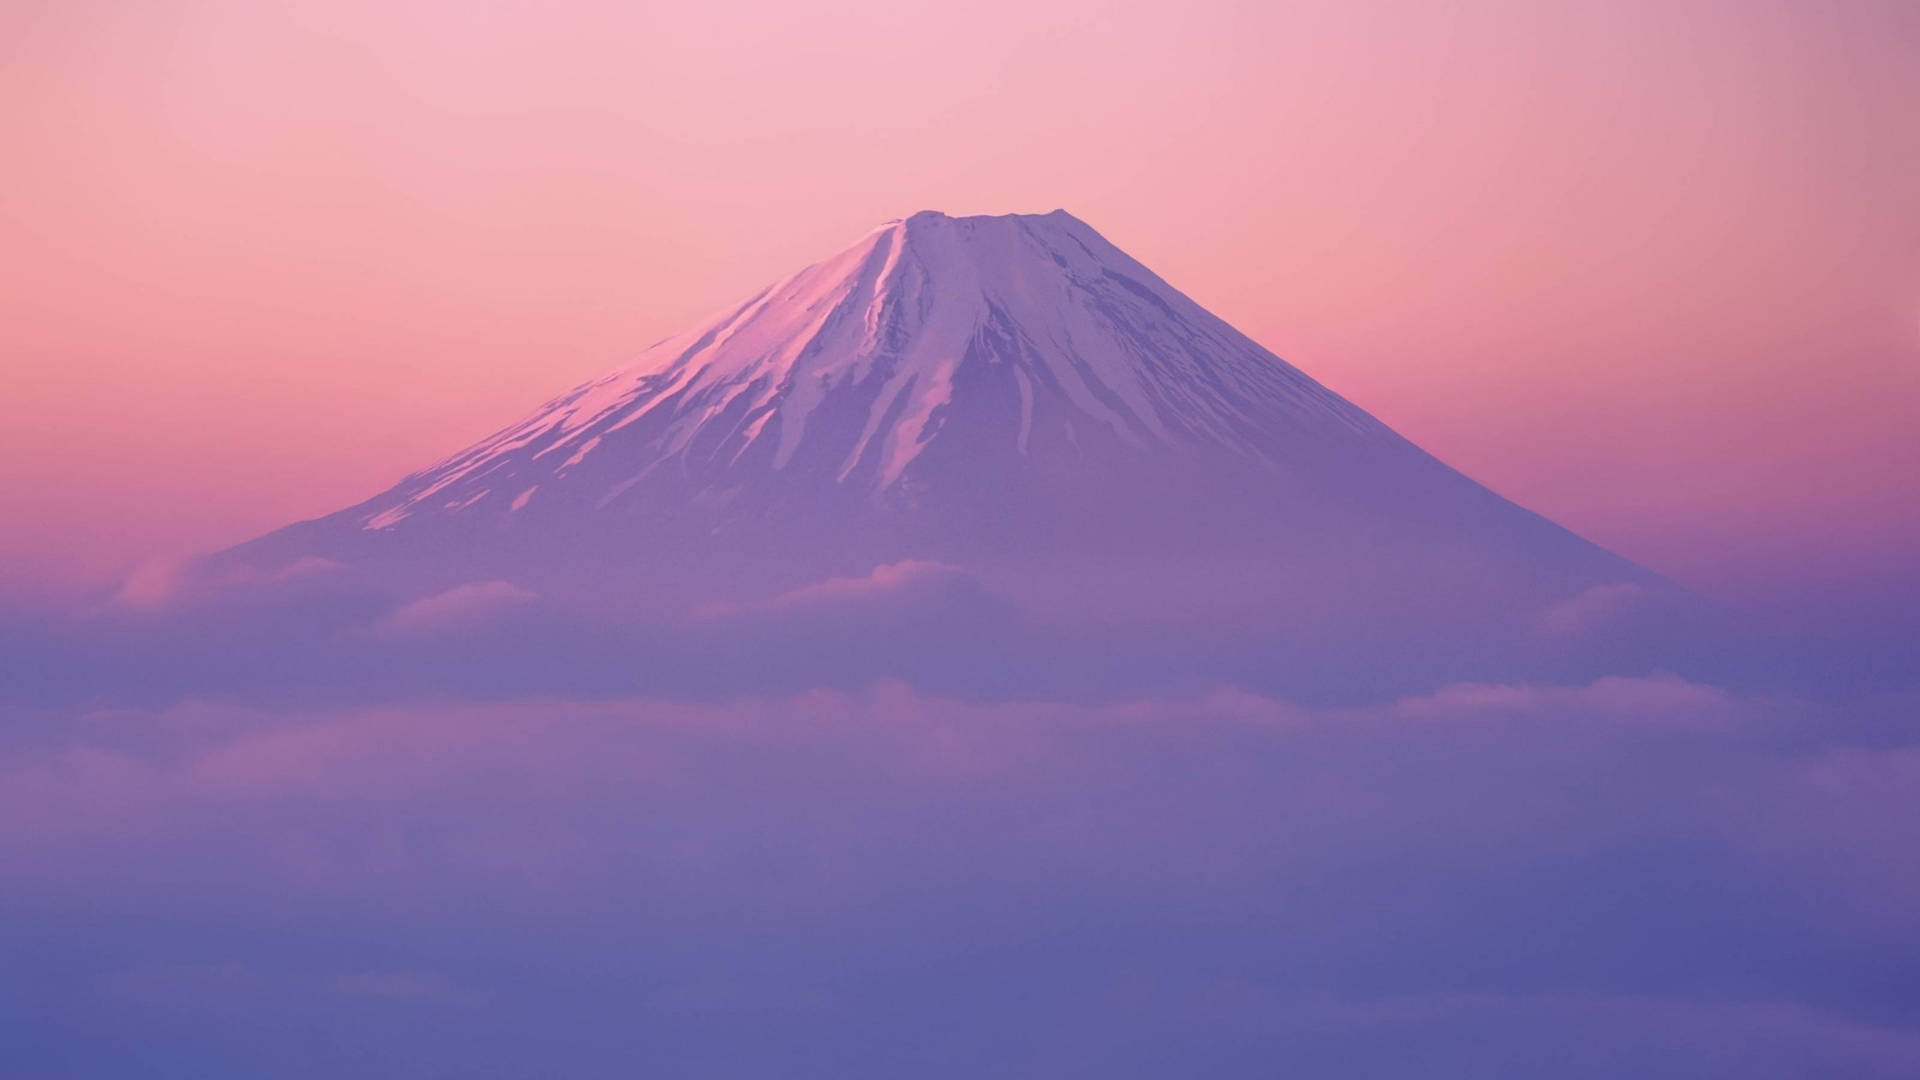 Aesthetic Japan Mt. Fuji